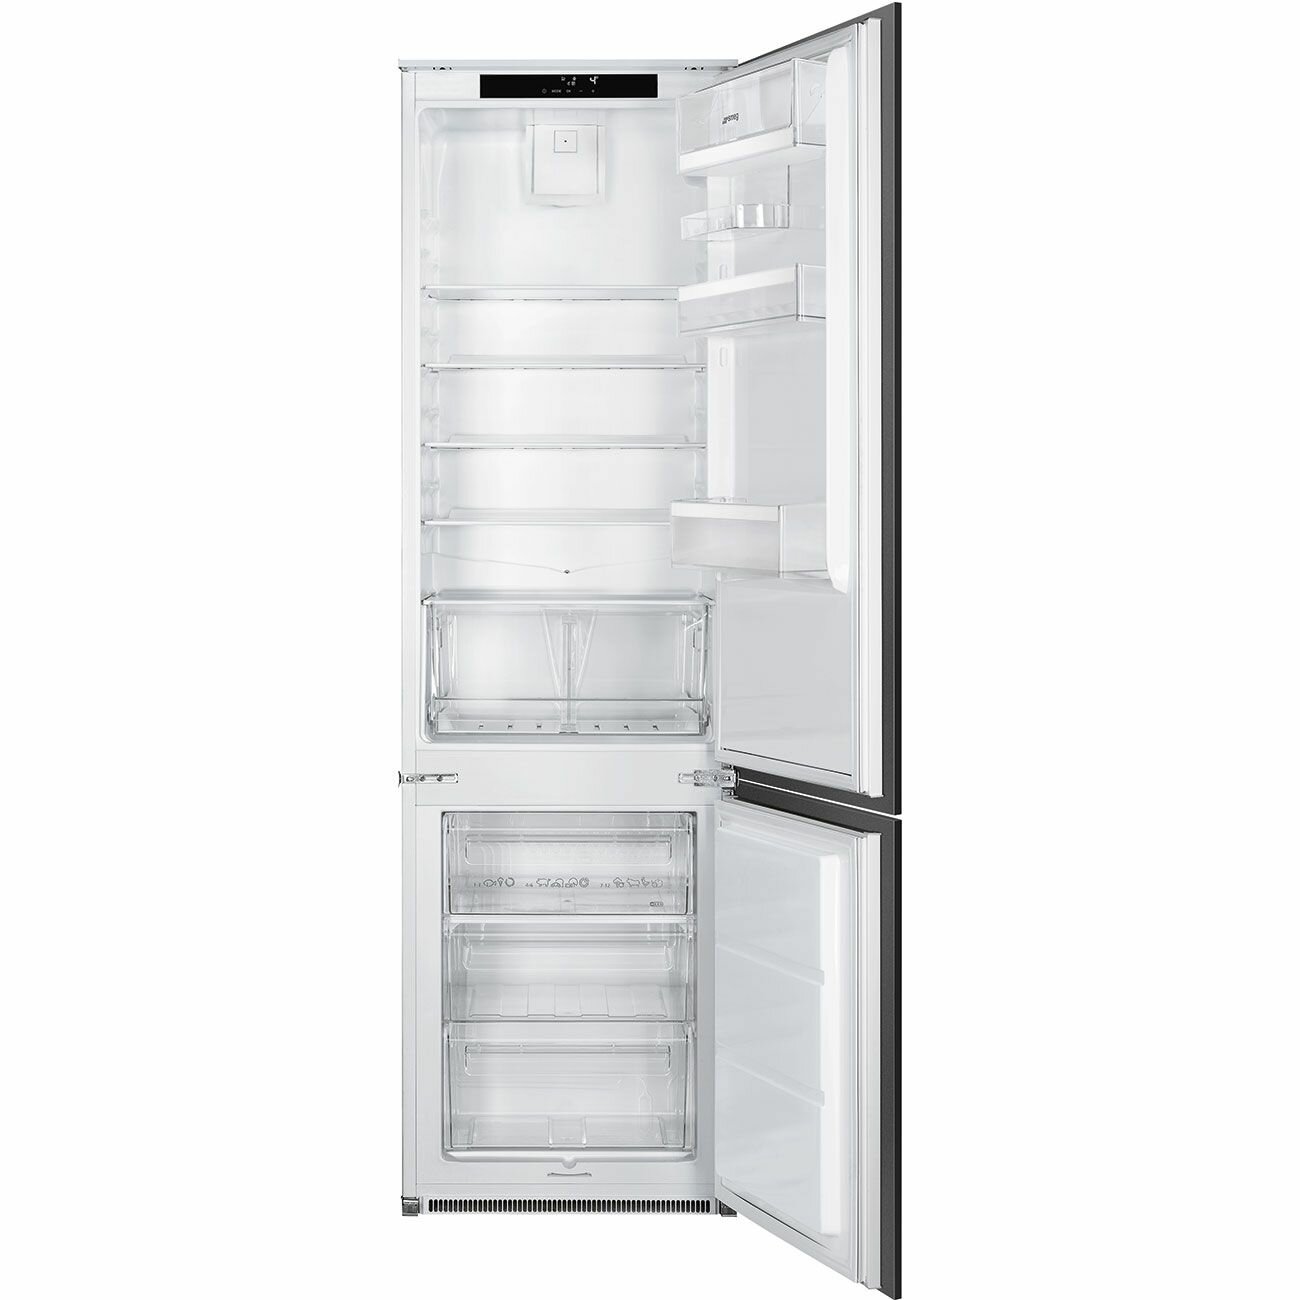 Встраиваемый холодильник Smeg C41941F1, белый